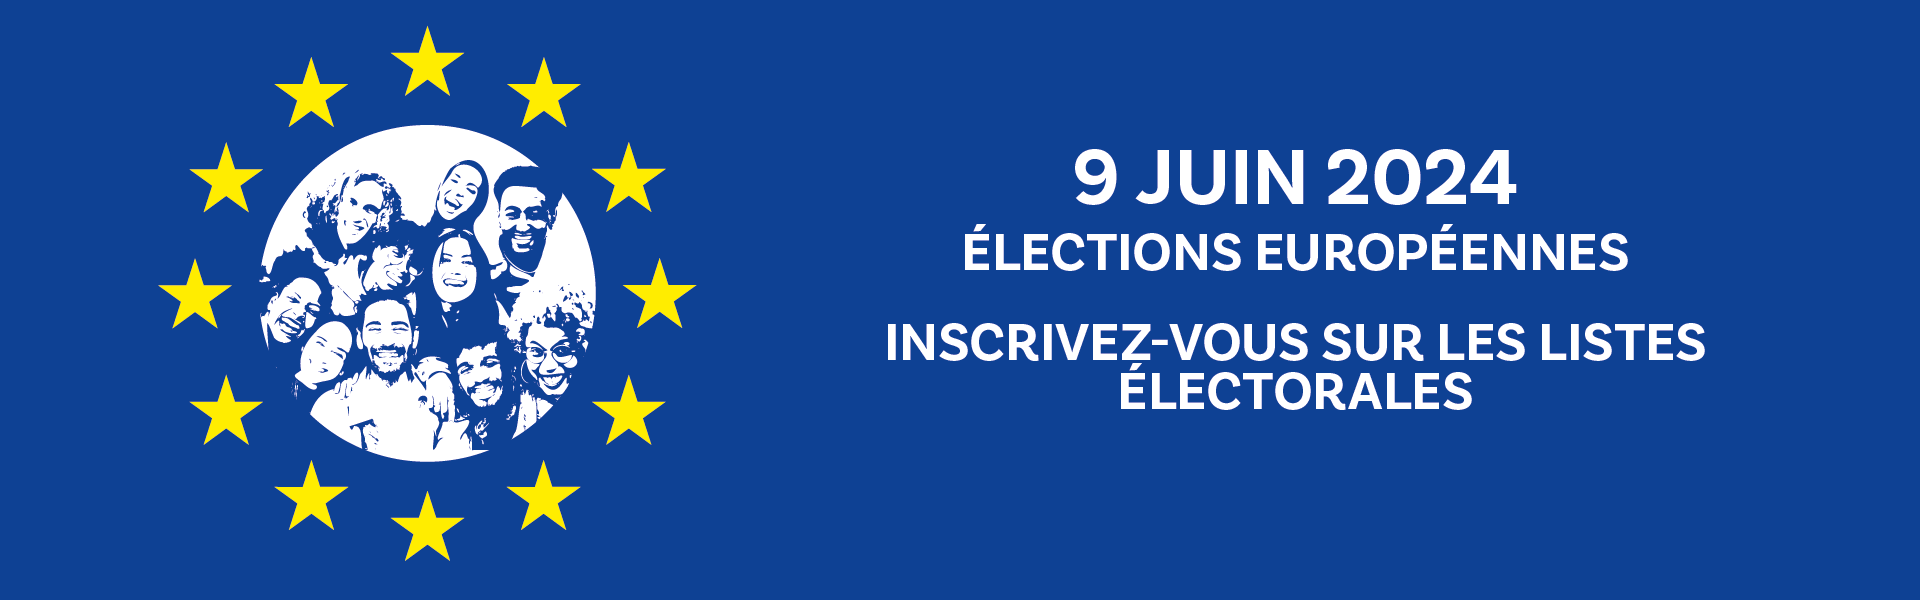 Élections européennes du 9 juin 2024 - Suis-je bien inscrit(e) ?